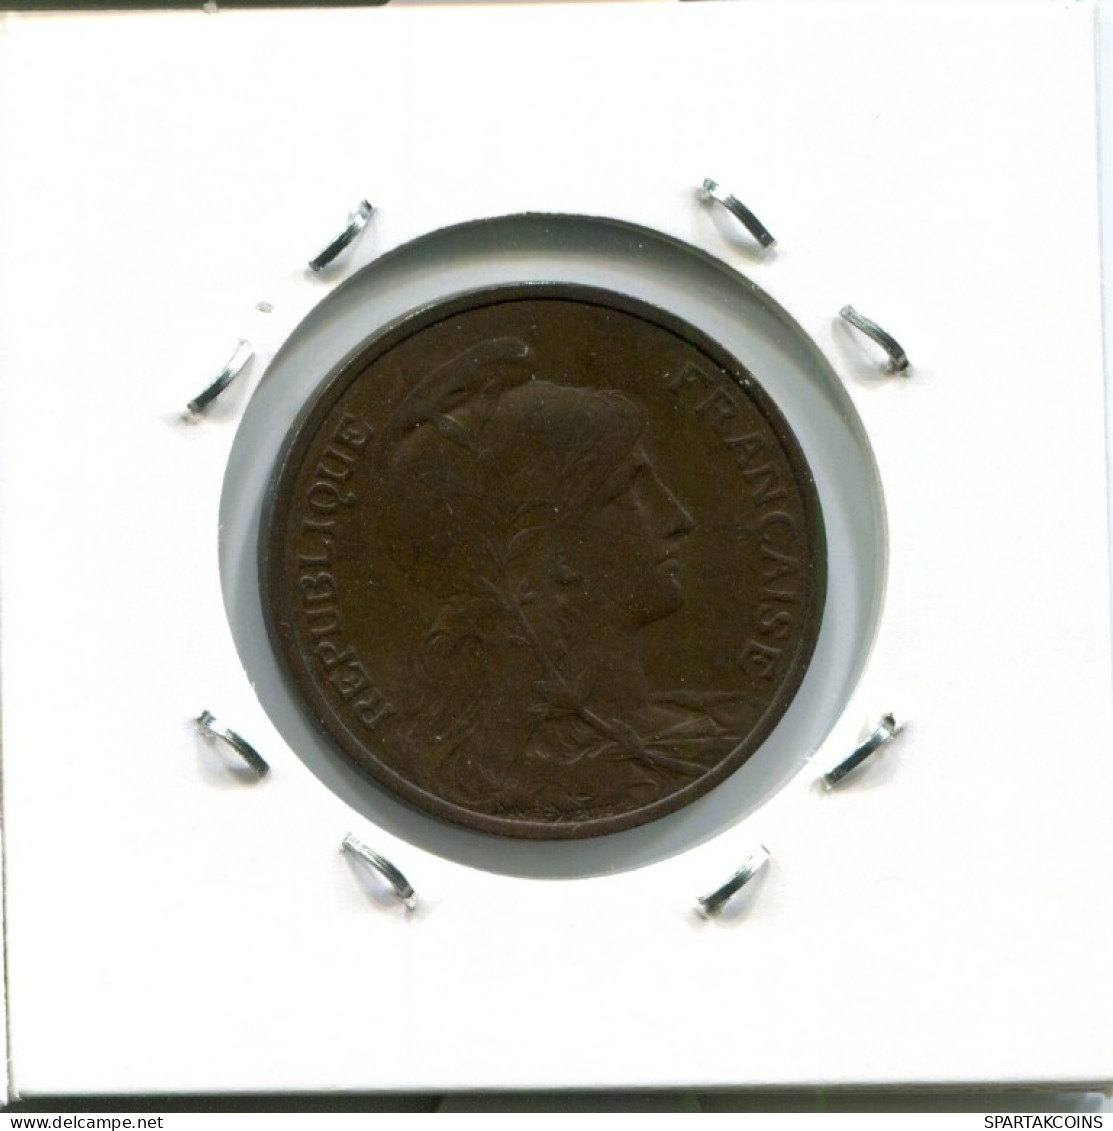 5 CENTIMES 1913 FRANCIA FRANCE Moneda #AM721.E.A - 5 Centimes